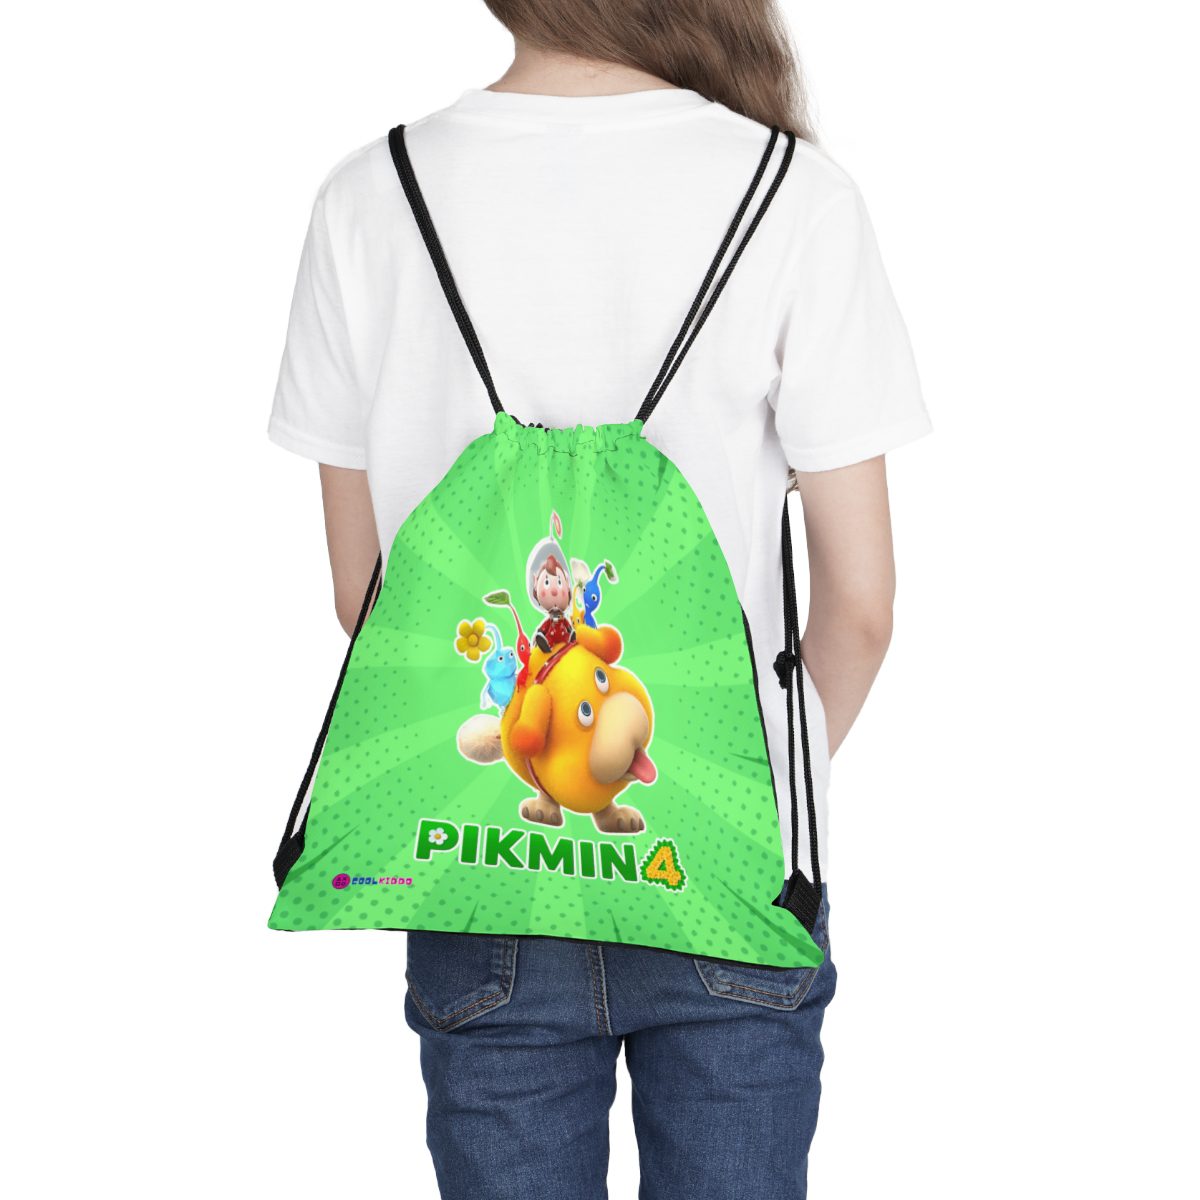 Nintendo PIKMIN 4 Video Game Outdoor Drawstring Bag Cool Kiddo 16